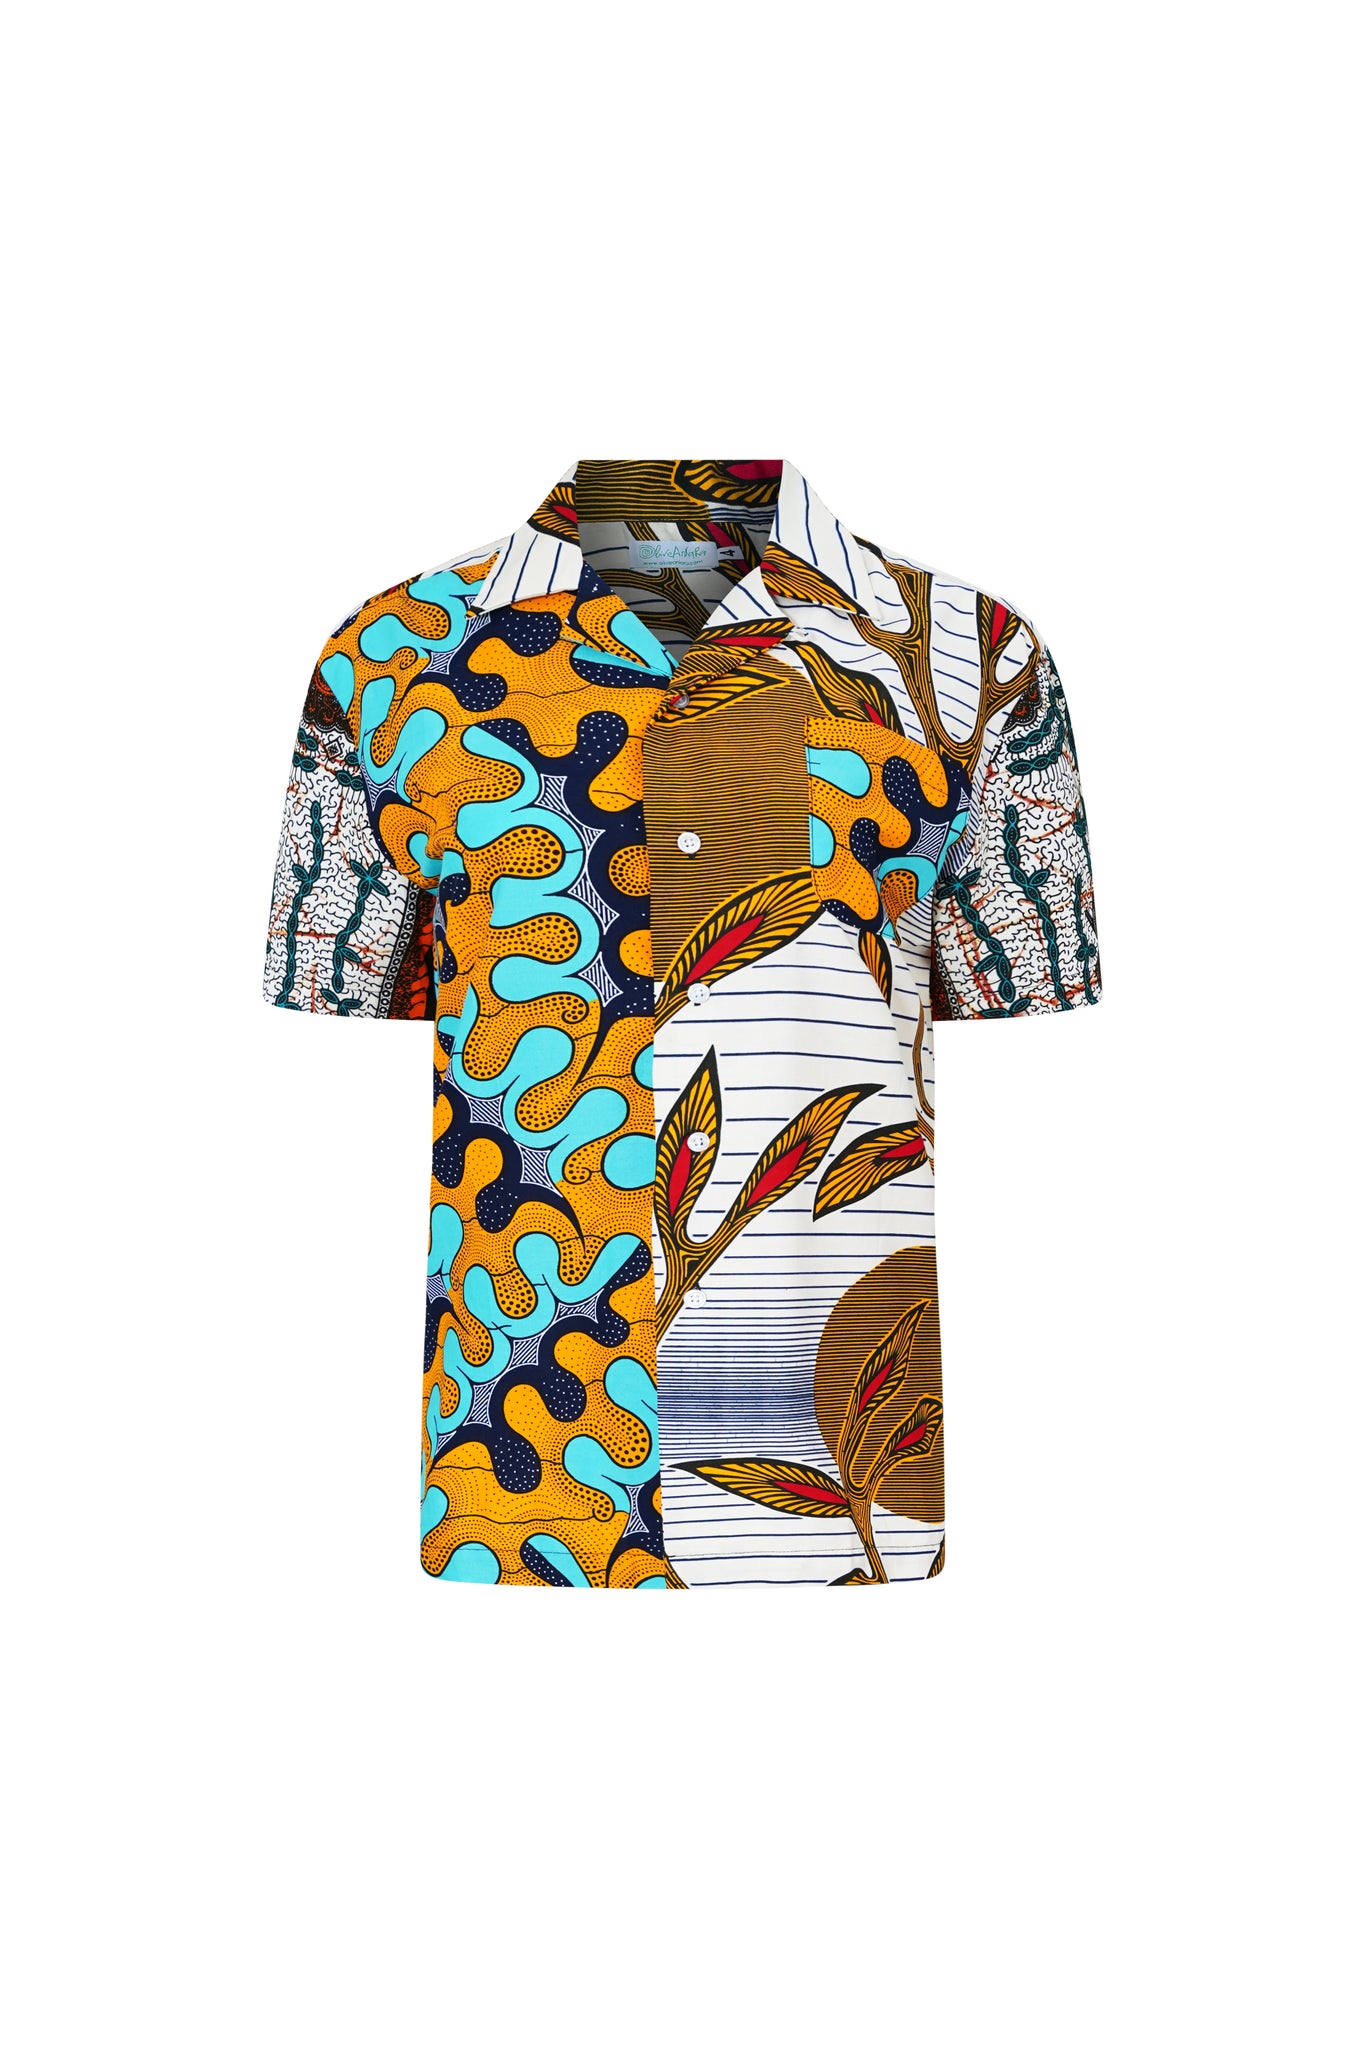 Zika Shirt - Mix Match Awoluba/Grotto Cyan Yellow and White African Ankara Wax Cotton Print